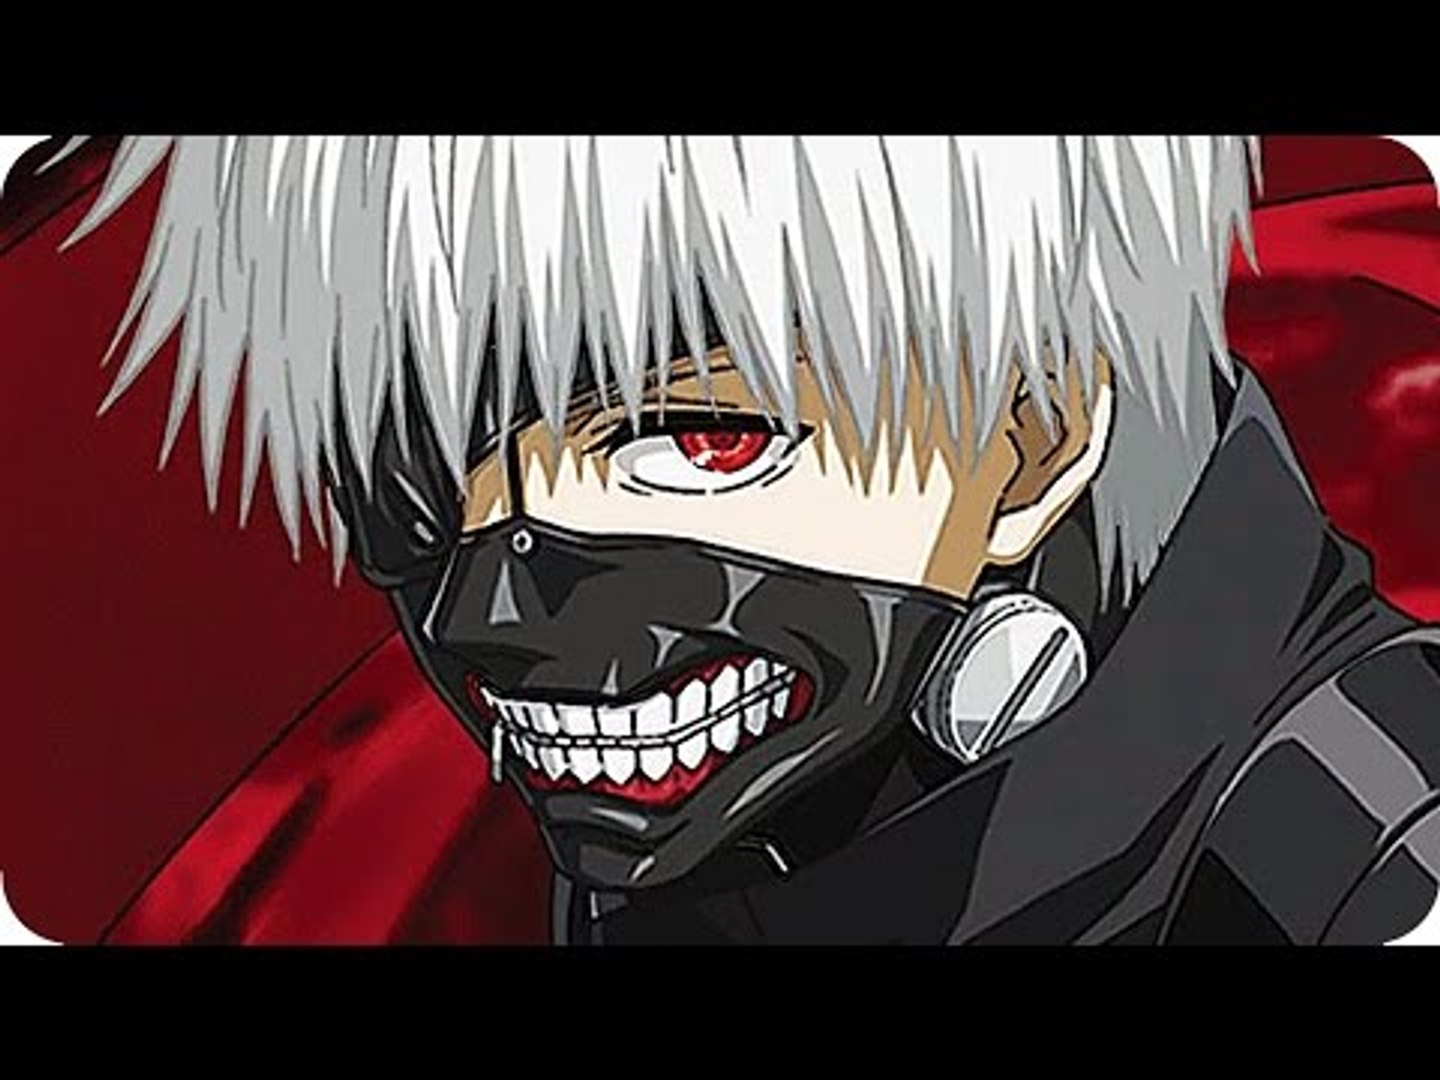 Tokyo Ghoul √A Episode 10 東京喰種√A Anime Review - Season 2